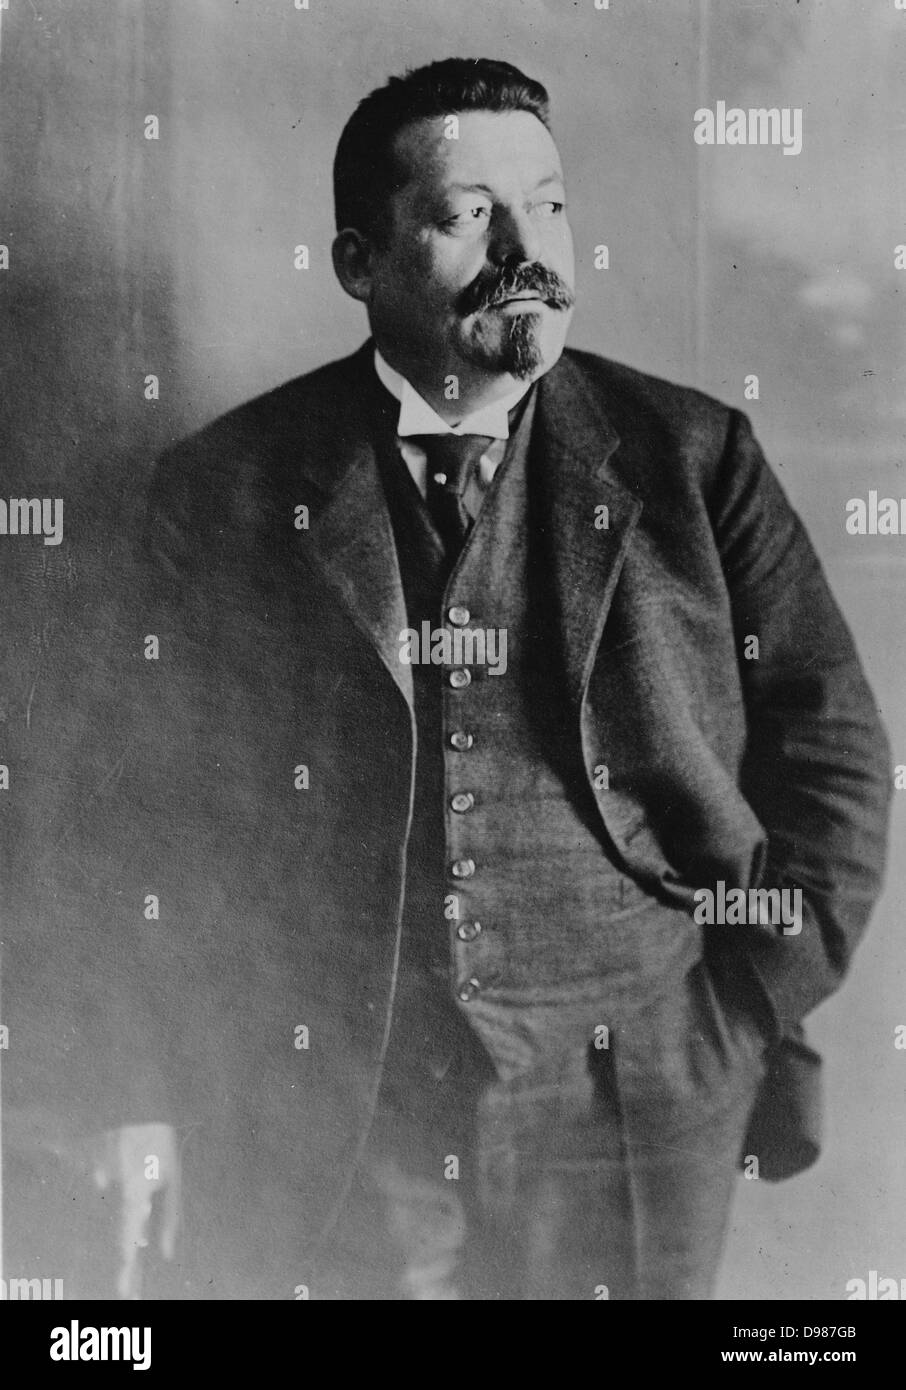 Friedrich Ebert (1871-1925), deutscher Politiker (SPD). Als Bundeskanzler von Deutschland und seinen ersten Präsidenten während der Weimarer Zeit serviert. Foto Februar 1921. Stockfoto